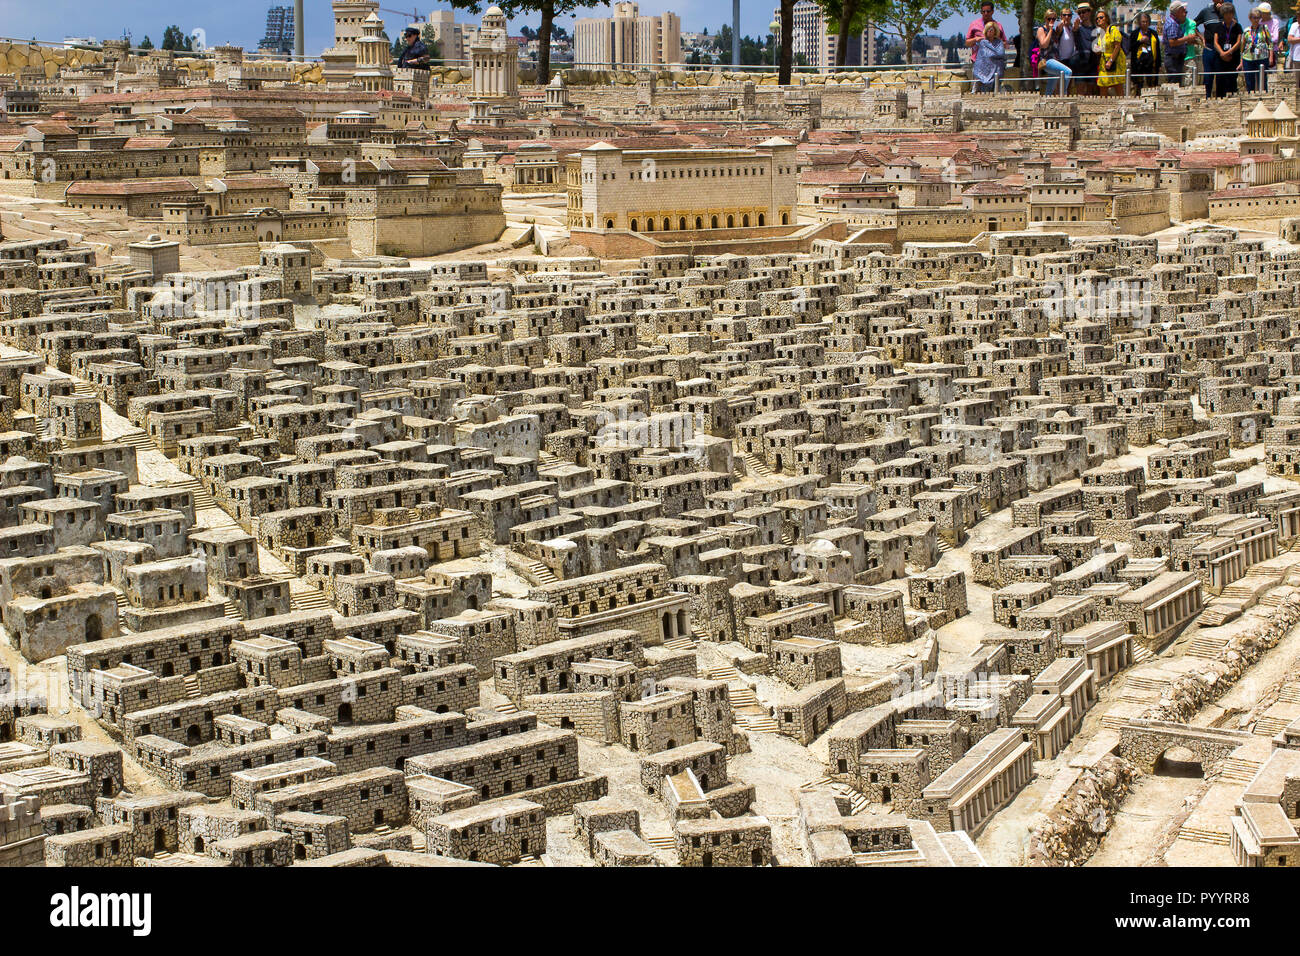 9 maggio 2018 i visitatori a piedi intorno all'aperto modello in scala della città antica di Gerusalemme presso il Museo di Israele in Gerusalemme. Il modello ha molti arbitra Foto Stock